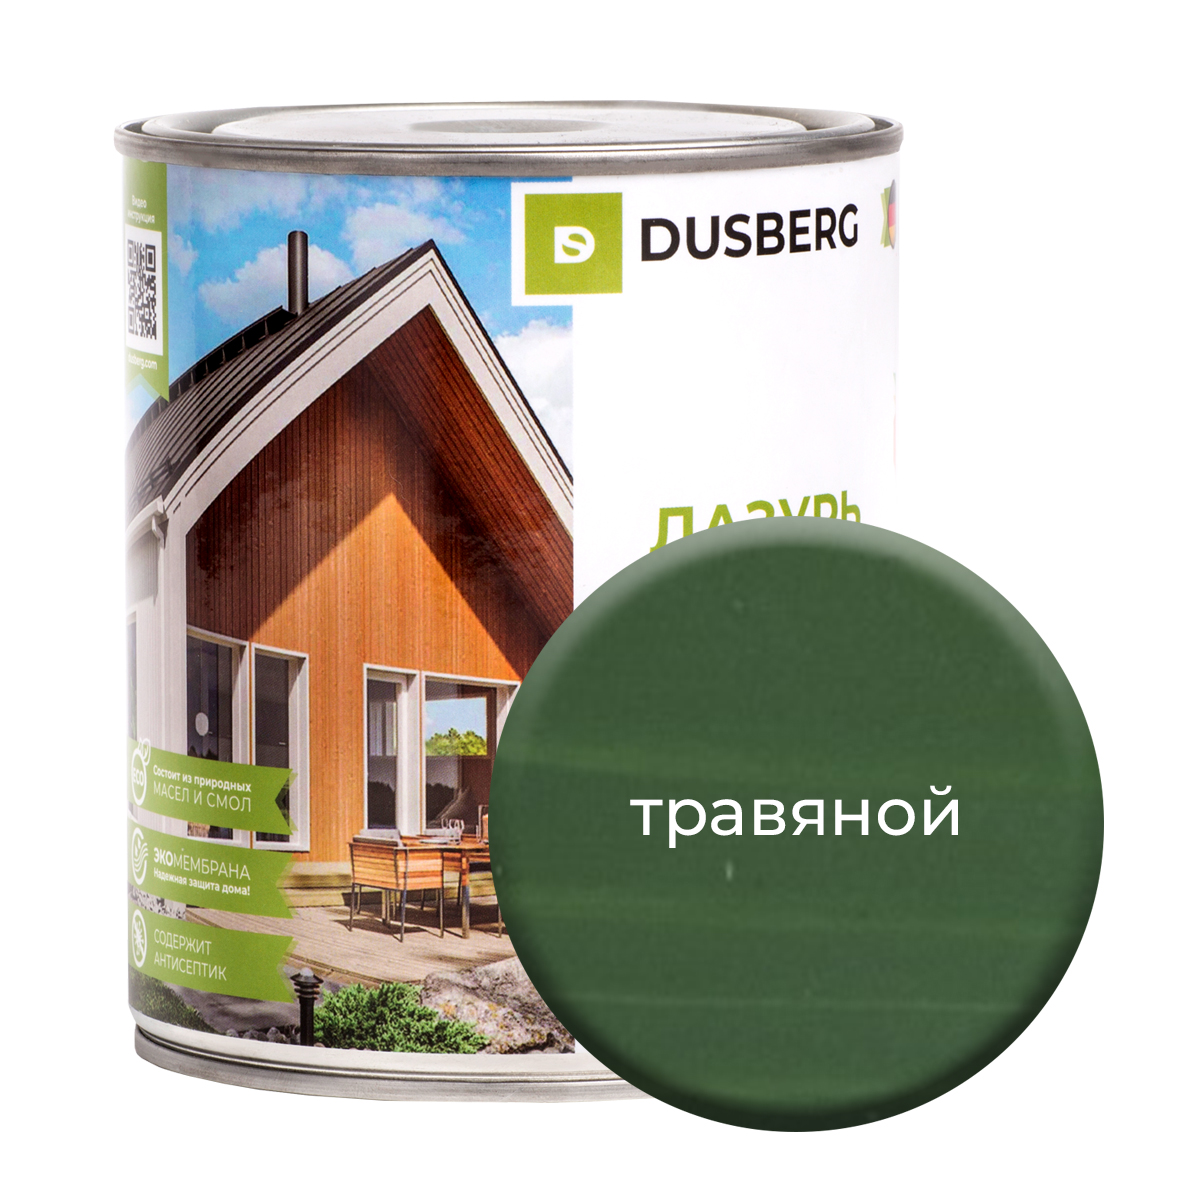 Лазурь Dusberg для дерева 750 мл Травяной чай травяной biopractika воскресный 3 медовая лаванда и смородина 25 пак